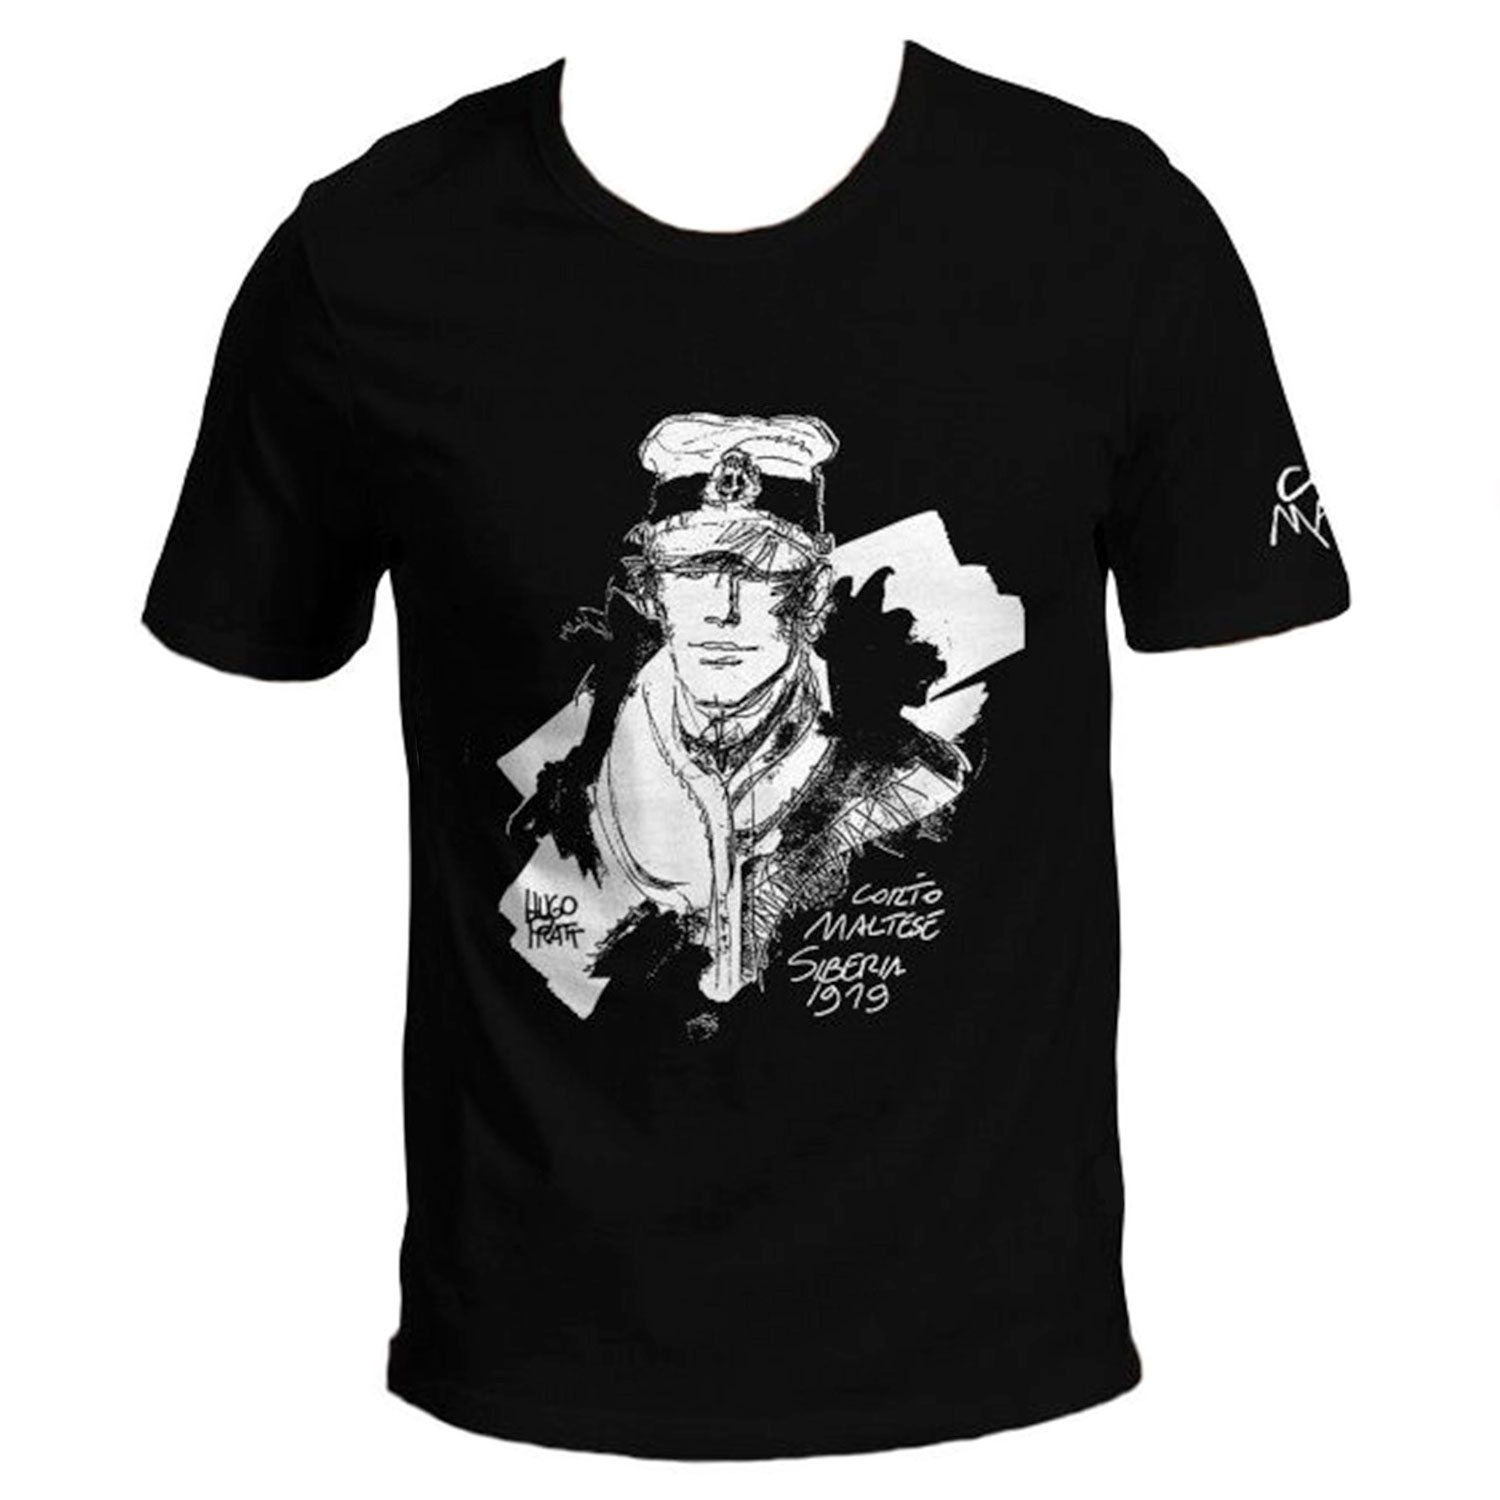 Hugo Pratt T-shirt : Corto Maltese , Siberia - Black - Size L